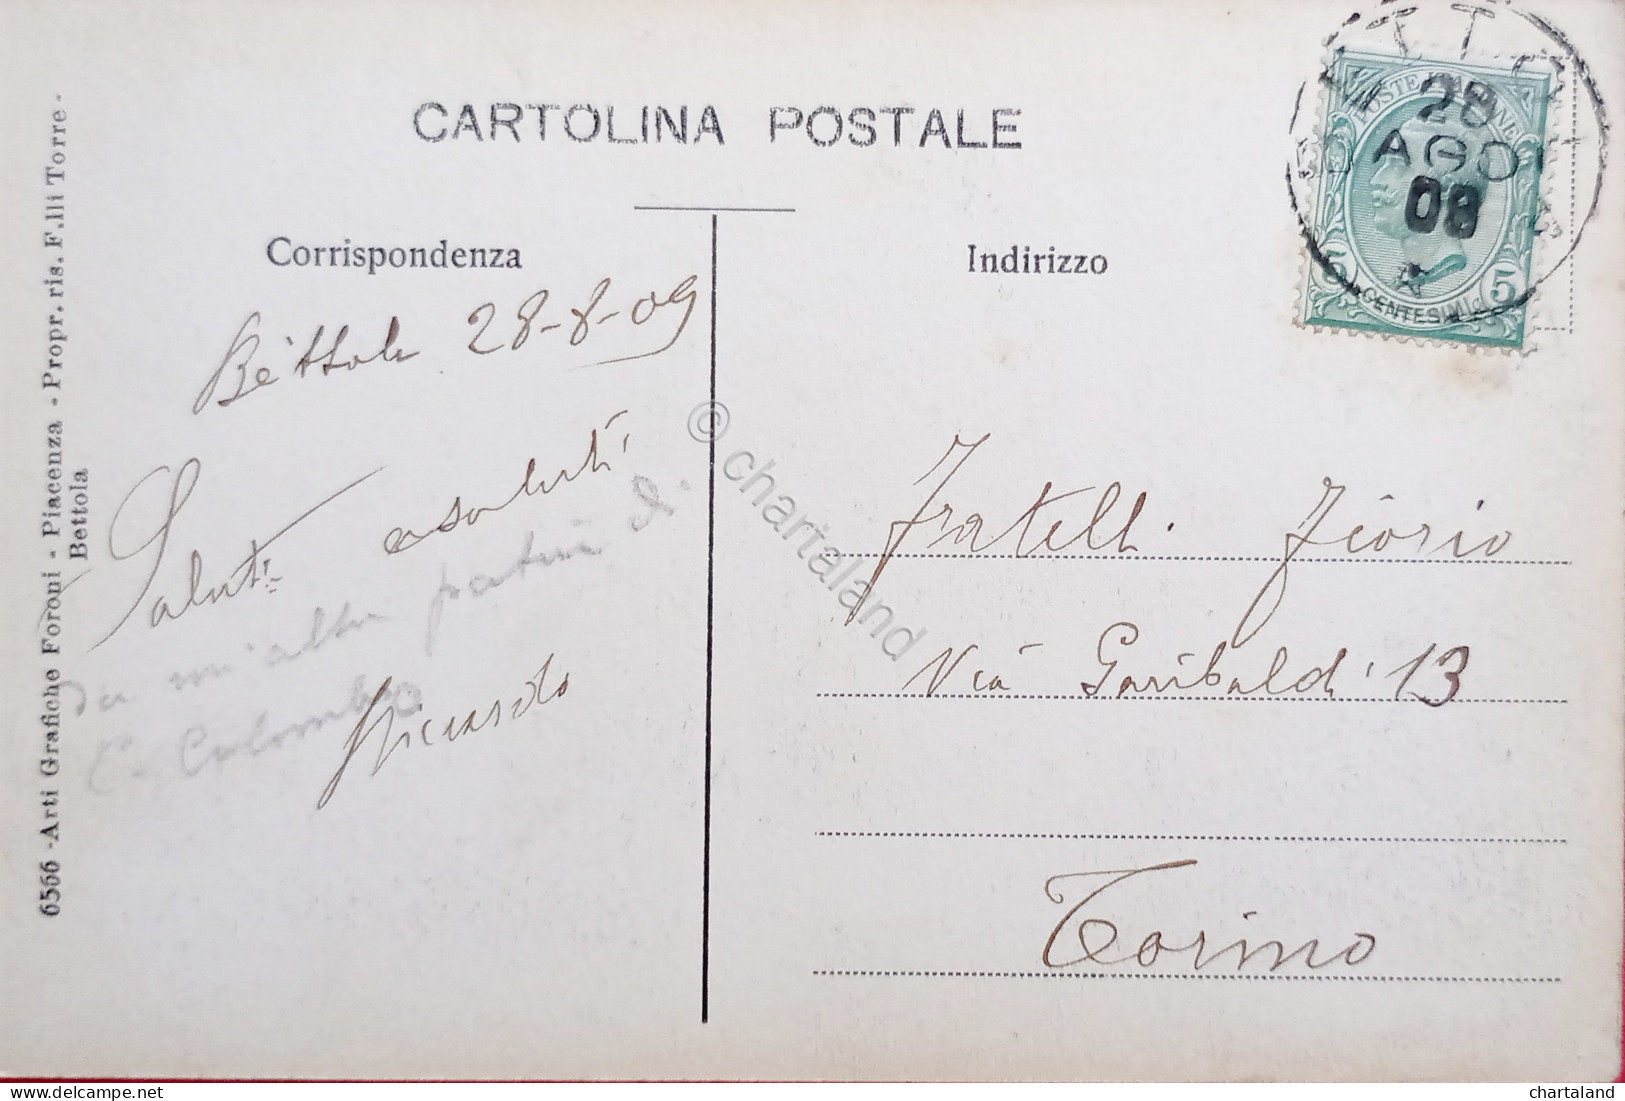 Cartolina - Bettola ( Piacenza ) - Piazza Cristoforo Colombo - 1909 - Piacenza